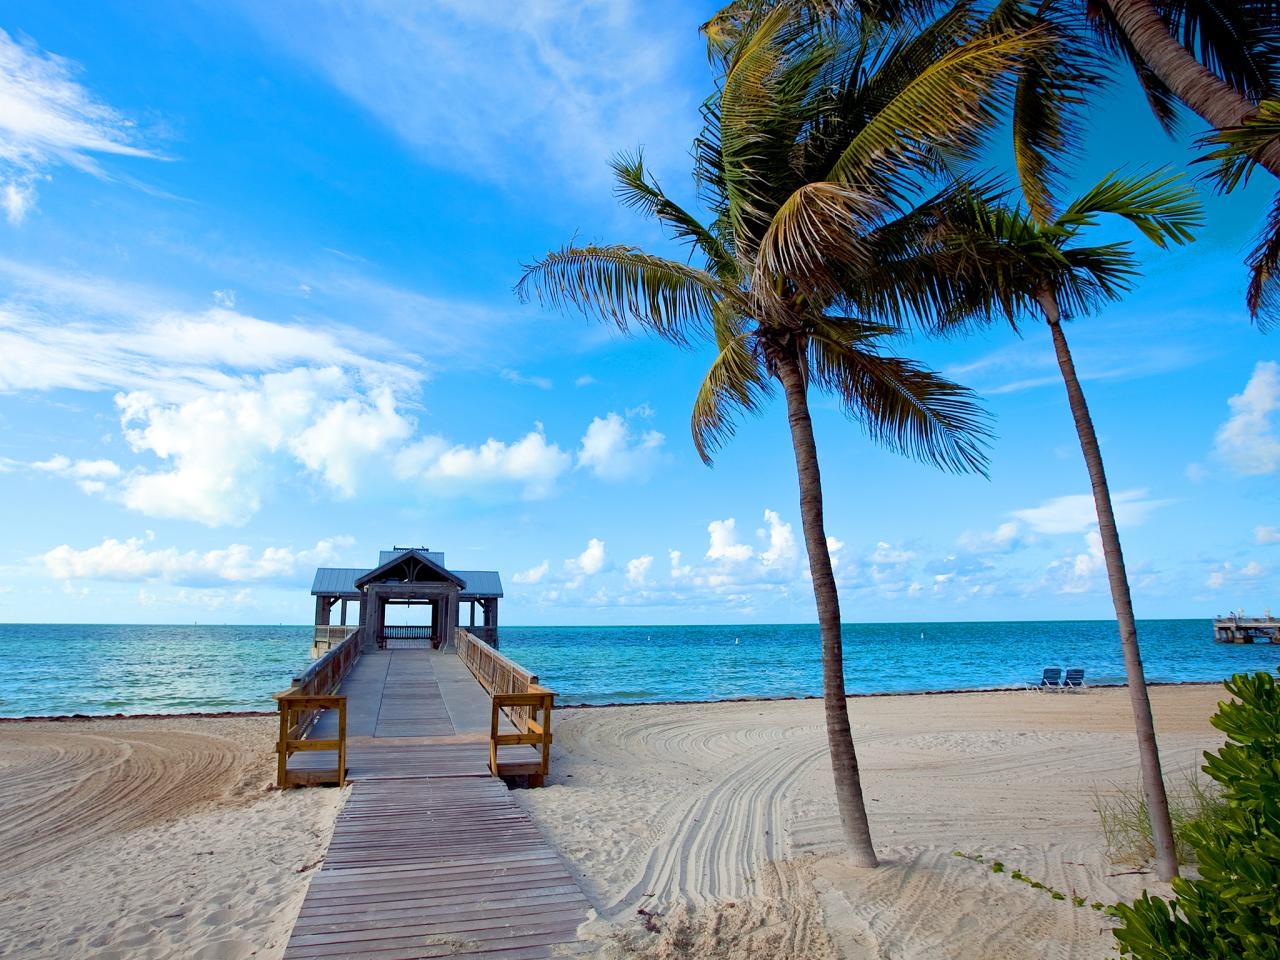 Image of Beautiful Beach in Miami, Florida.